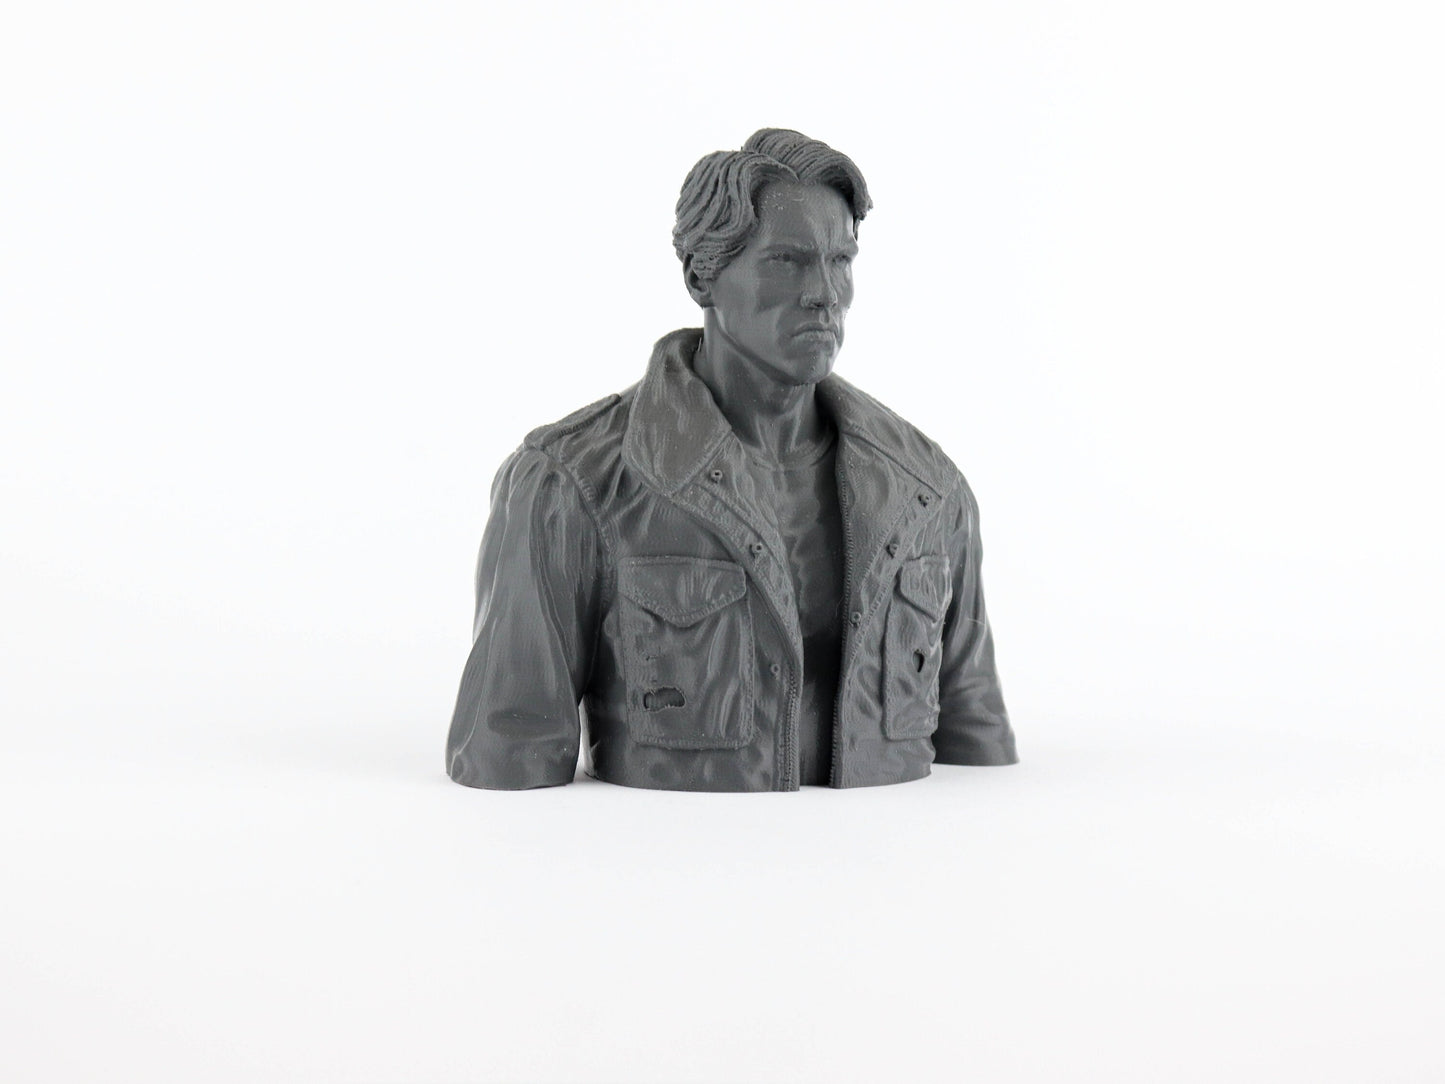 Arnold Schwarzenegger as Terminator 3d Bust Sculpture